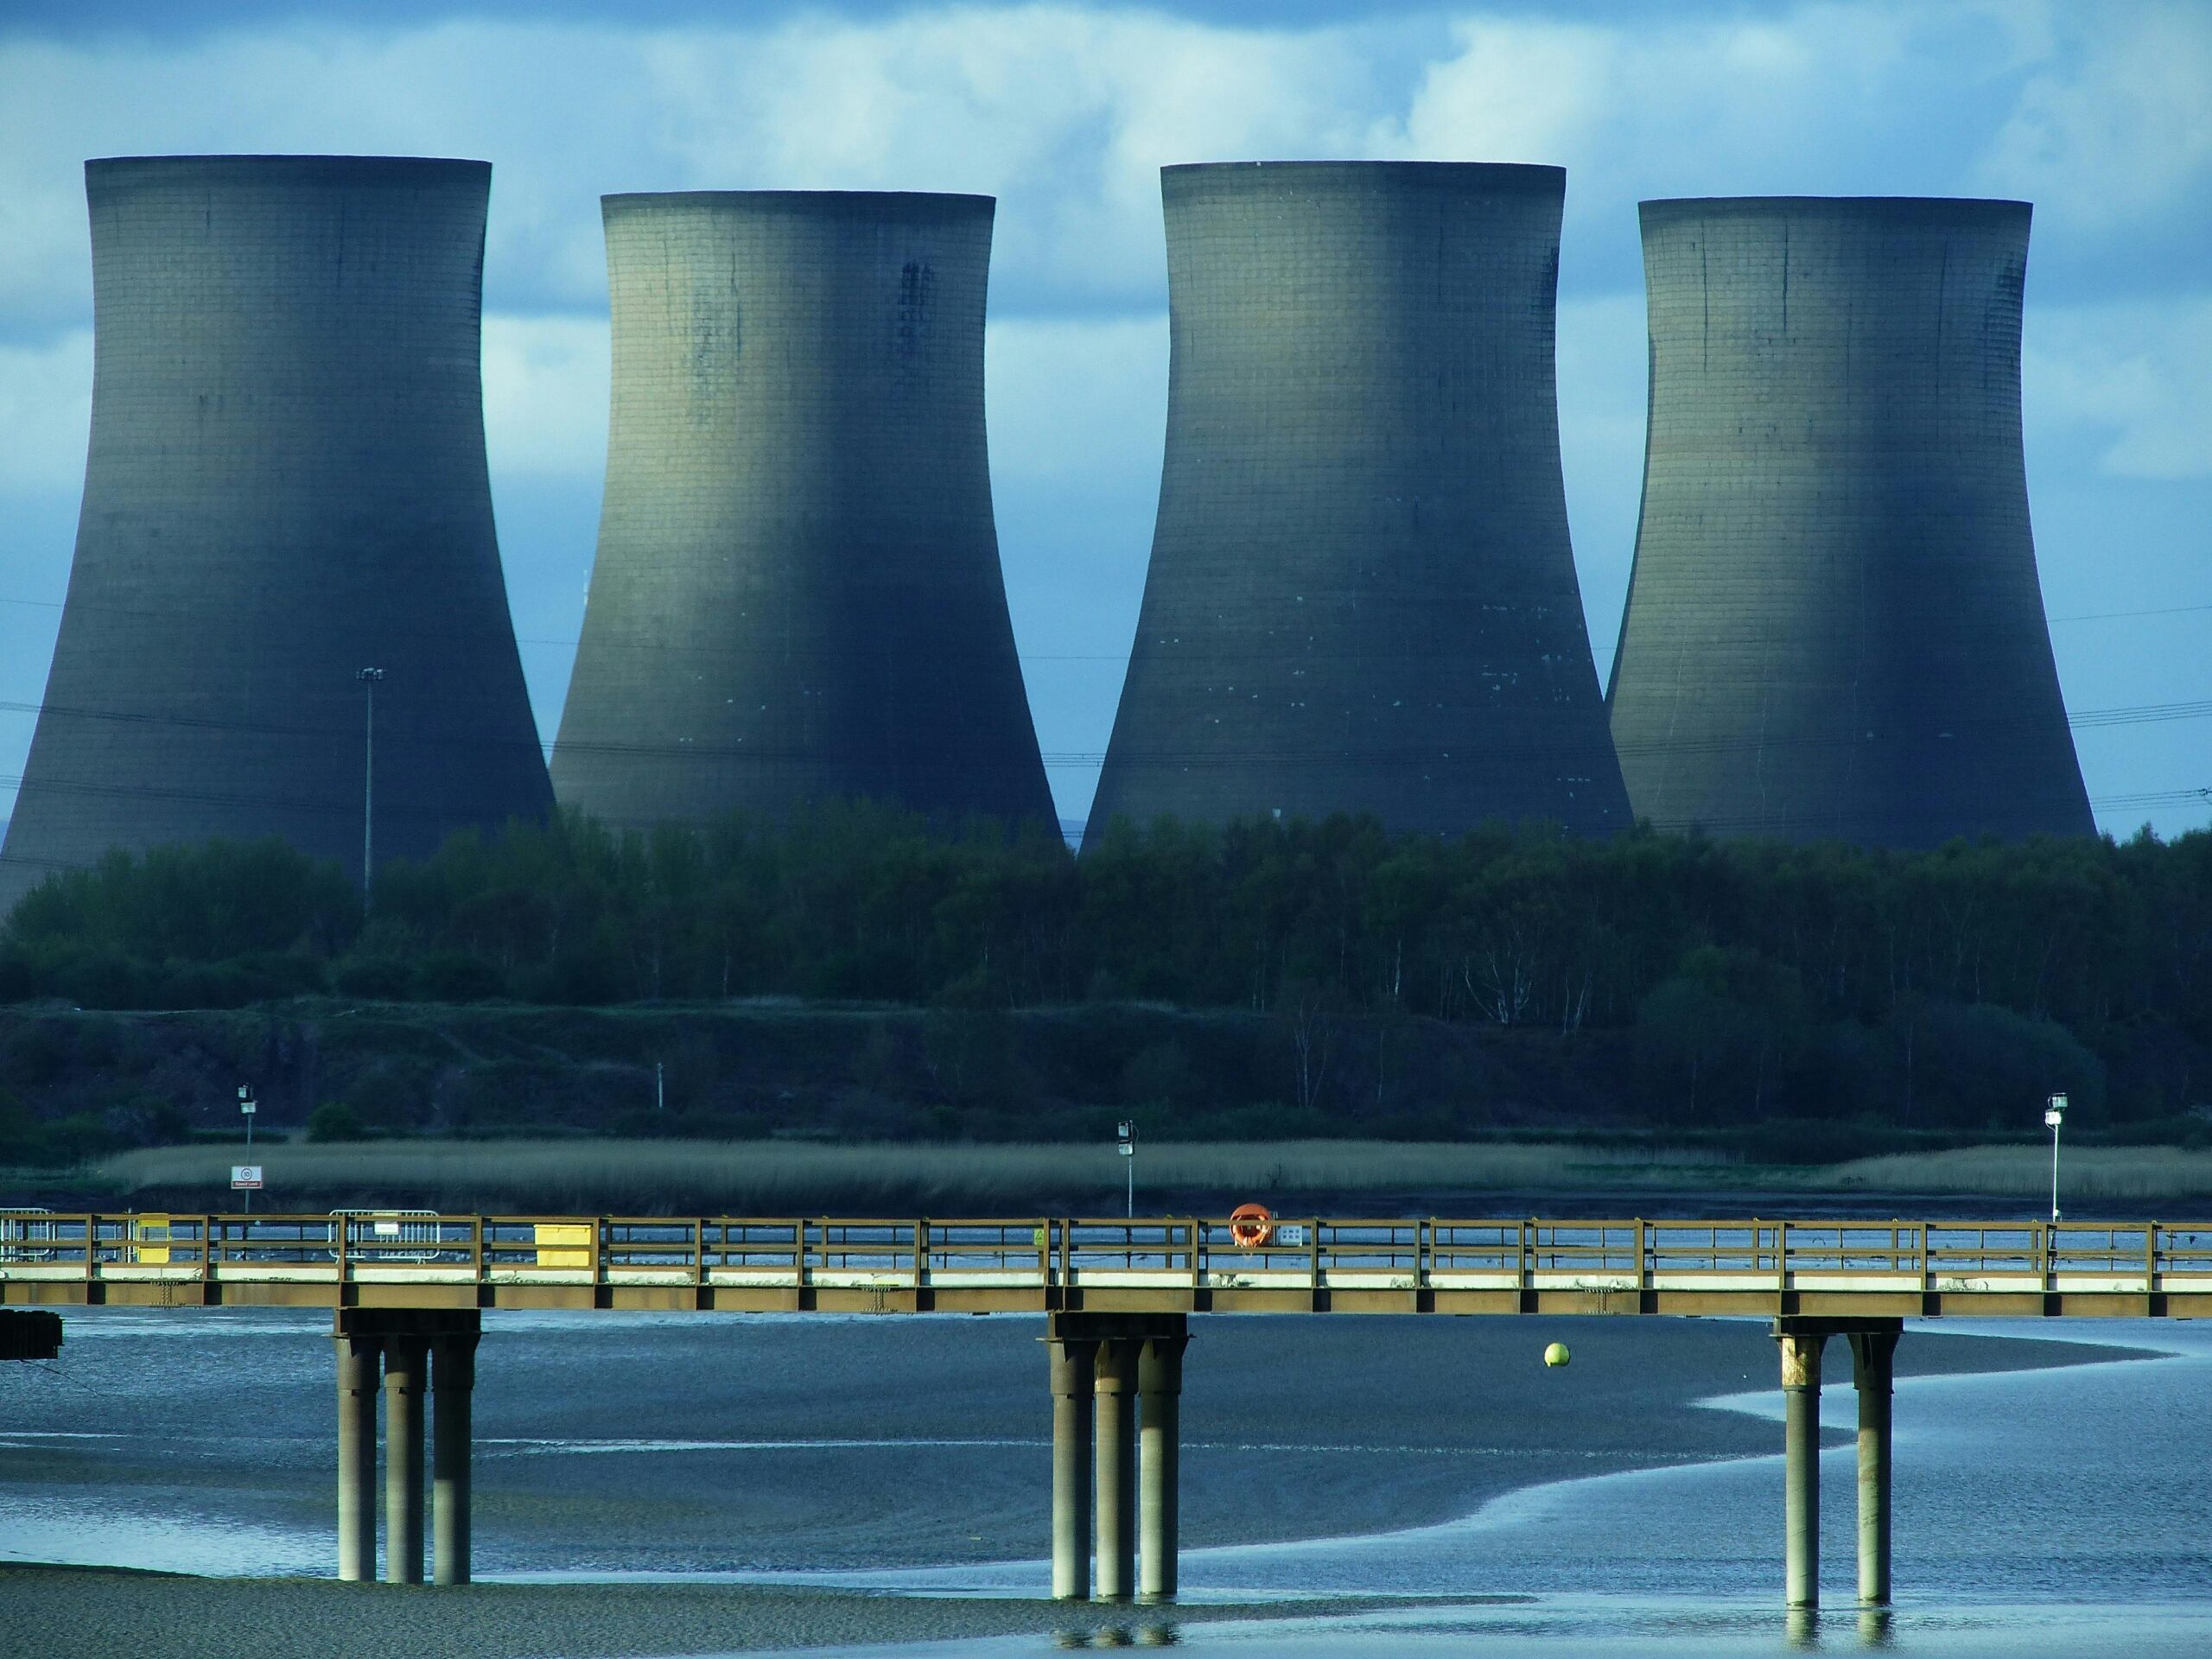 gruvbolag För nästan 70 år sedan, i Shippingport, Pennsylvania, började världens första kärnkraftverk producera elektricitet. Detta kraftverk hade en relativt liten effekt och kunde producera bara 60 megawatt kraft. Det är förvärrat av moderna kärnkraftverk, som Bruce Nuclear Generating Station i Kanada, med förmågan att producera 6550 megawatt. Men den lilla kärnkraften i Pennsylvania visade att uran kunde utnyttjas för att producera riklig och pålitlig elektricitet. Den så kallade atomåldern hade börjat.